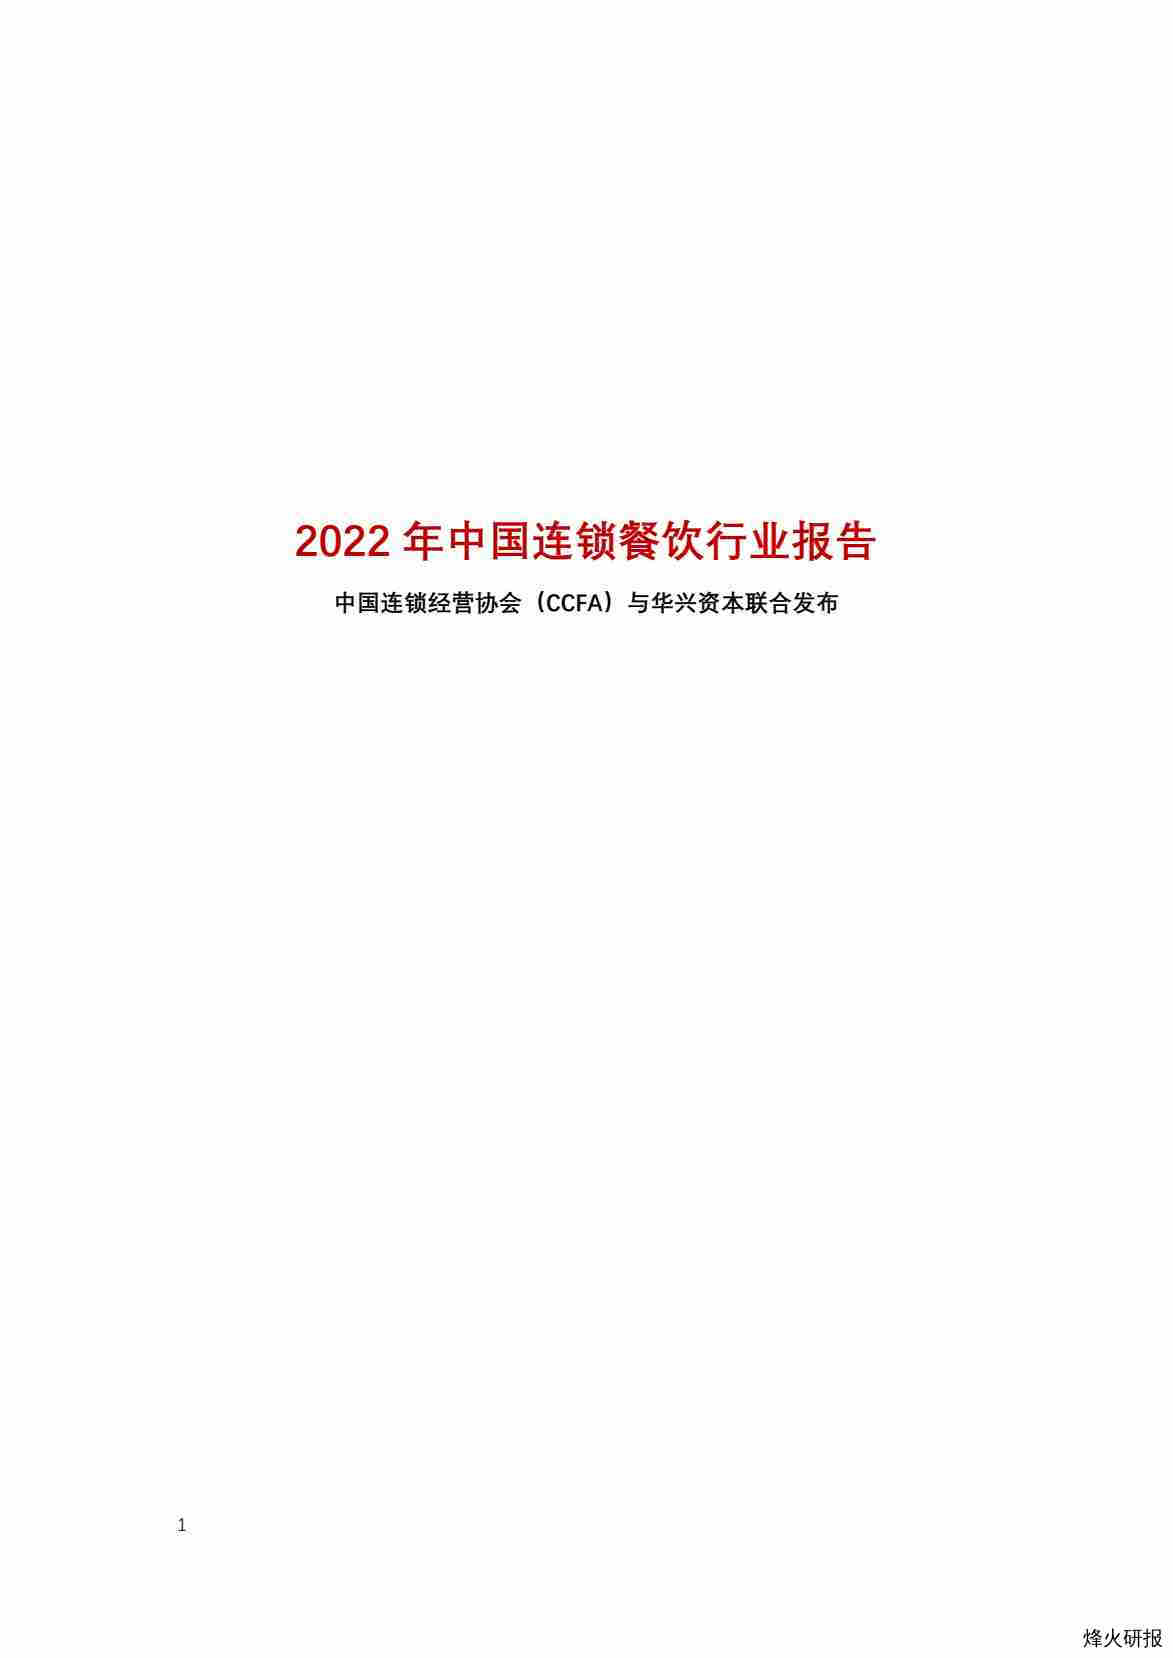 【中国连锁经营协会】20220909_2022年中国连锁餐饮报告.pdf-第一页